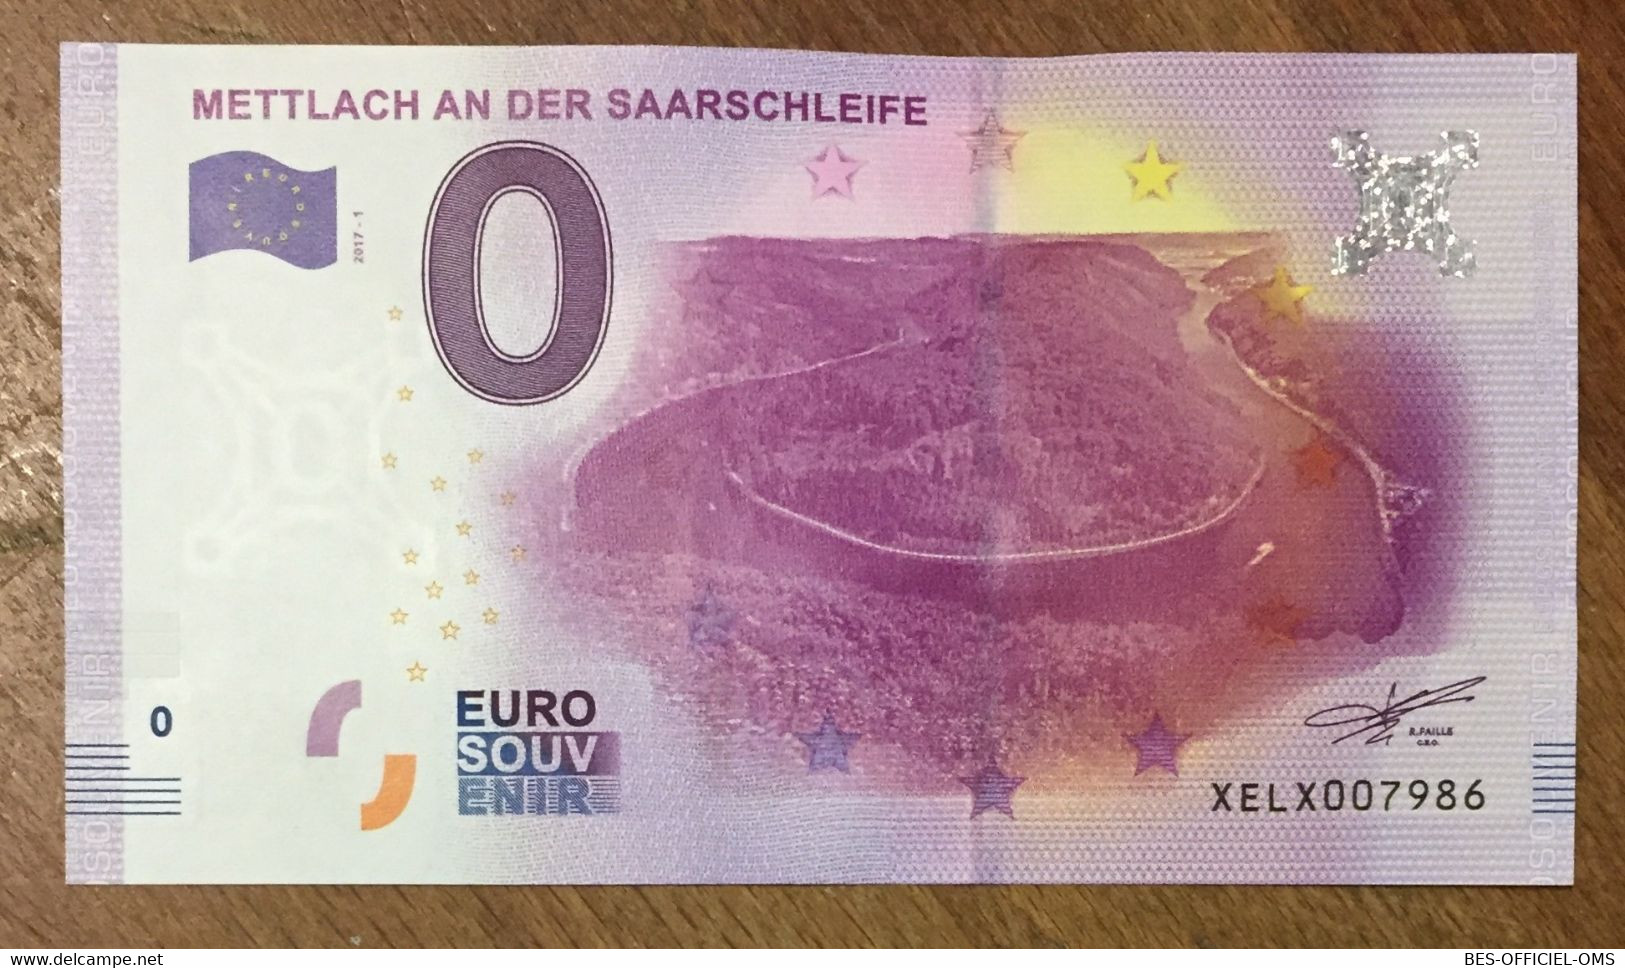 2017 BILLET 0 EURO SOUVENIR ALLEMAGNE DEUTSCHLAND METTLACH AN DER SAARSCHLEIFE ZERO 0 EURO SCHEIN BANKNOTE PAPER MONEY - [17] Fakes & Specimens